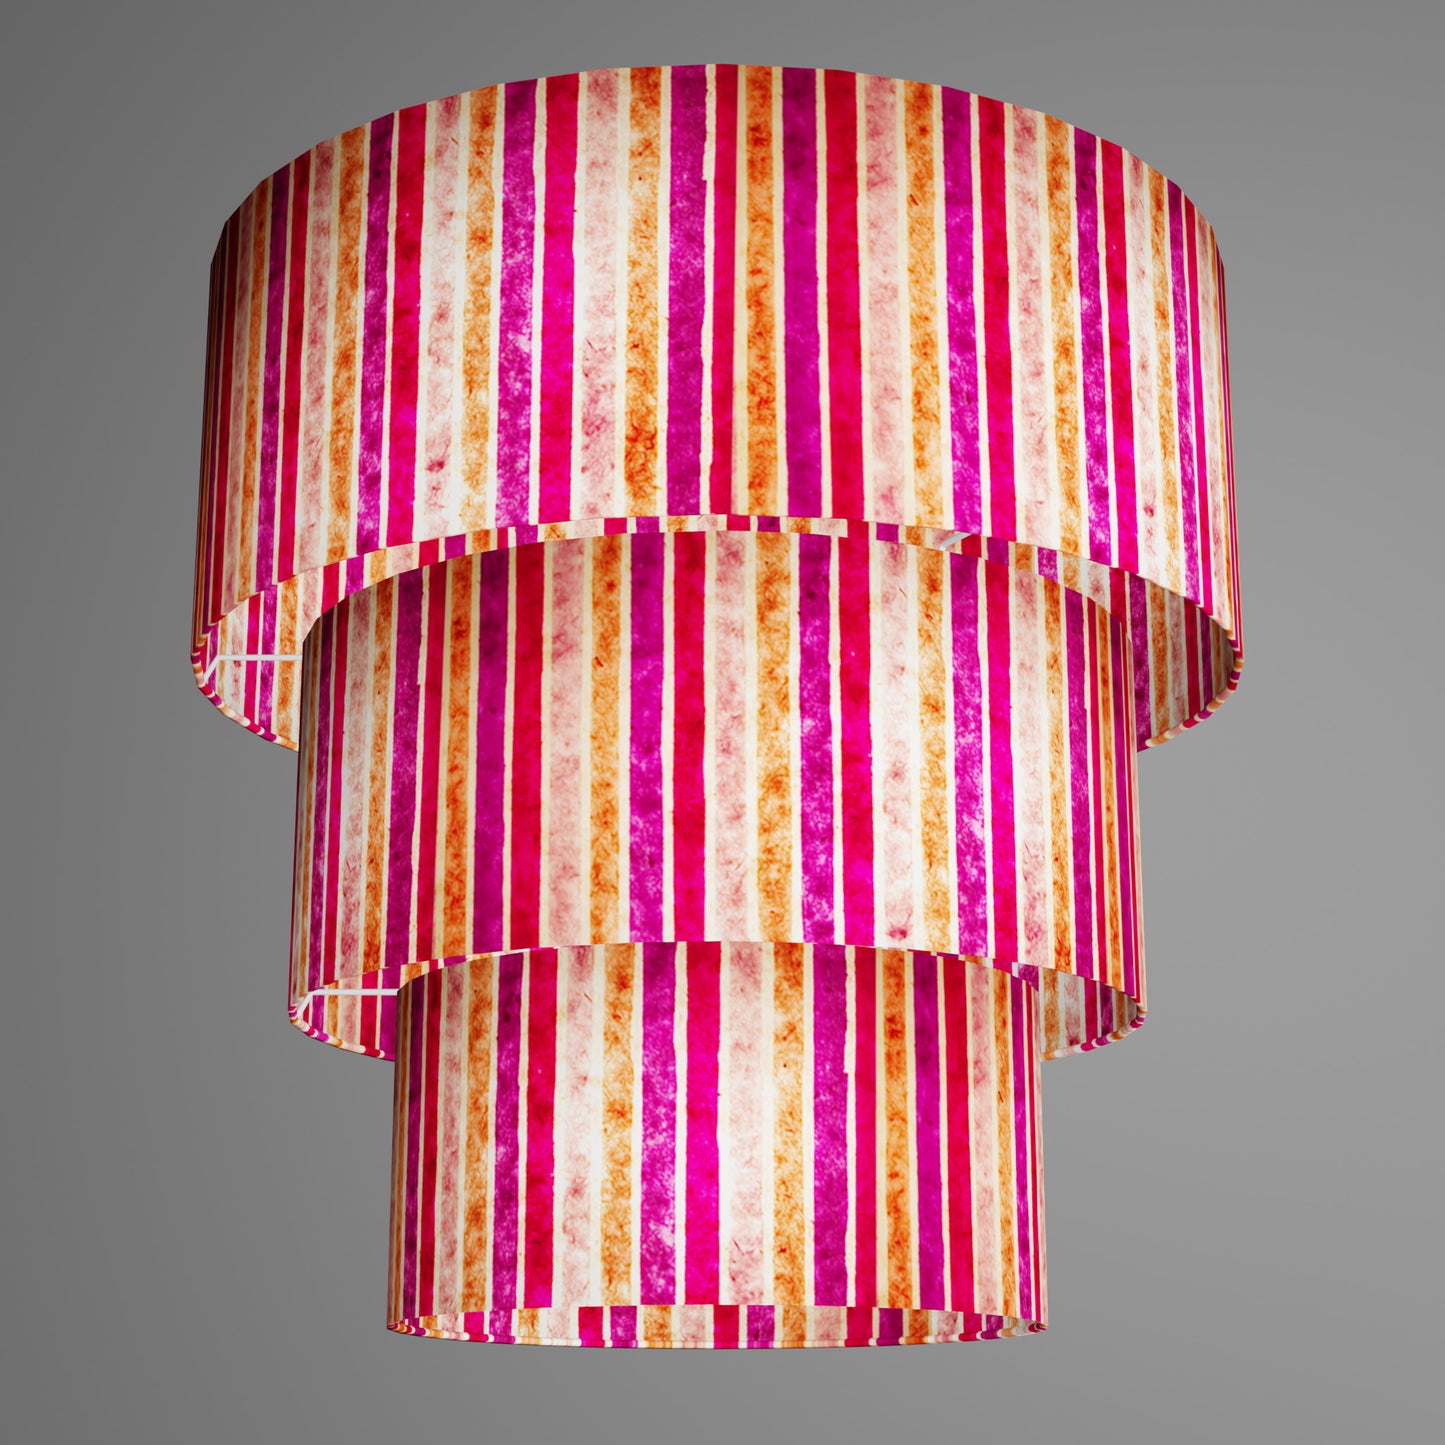 3 Tier Lamp Shade - P04 - Batik Stripes Pink, 50cm x 20cm, 40cm x 17.5cm & 30cm x 15cm